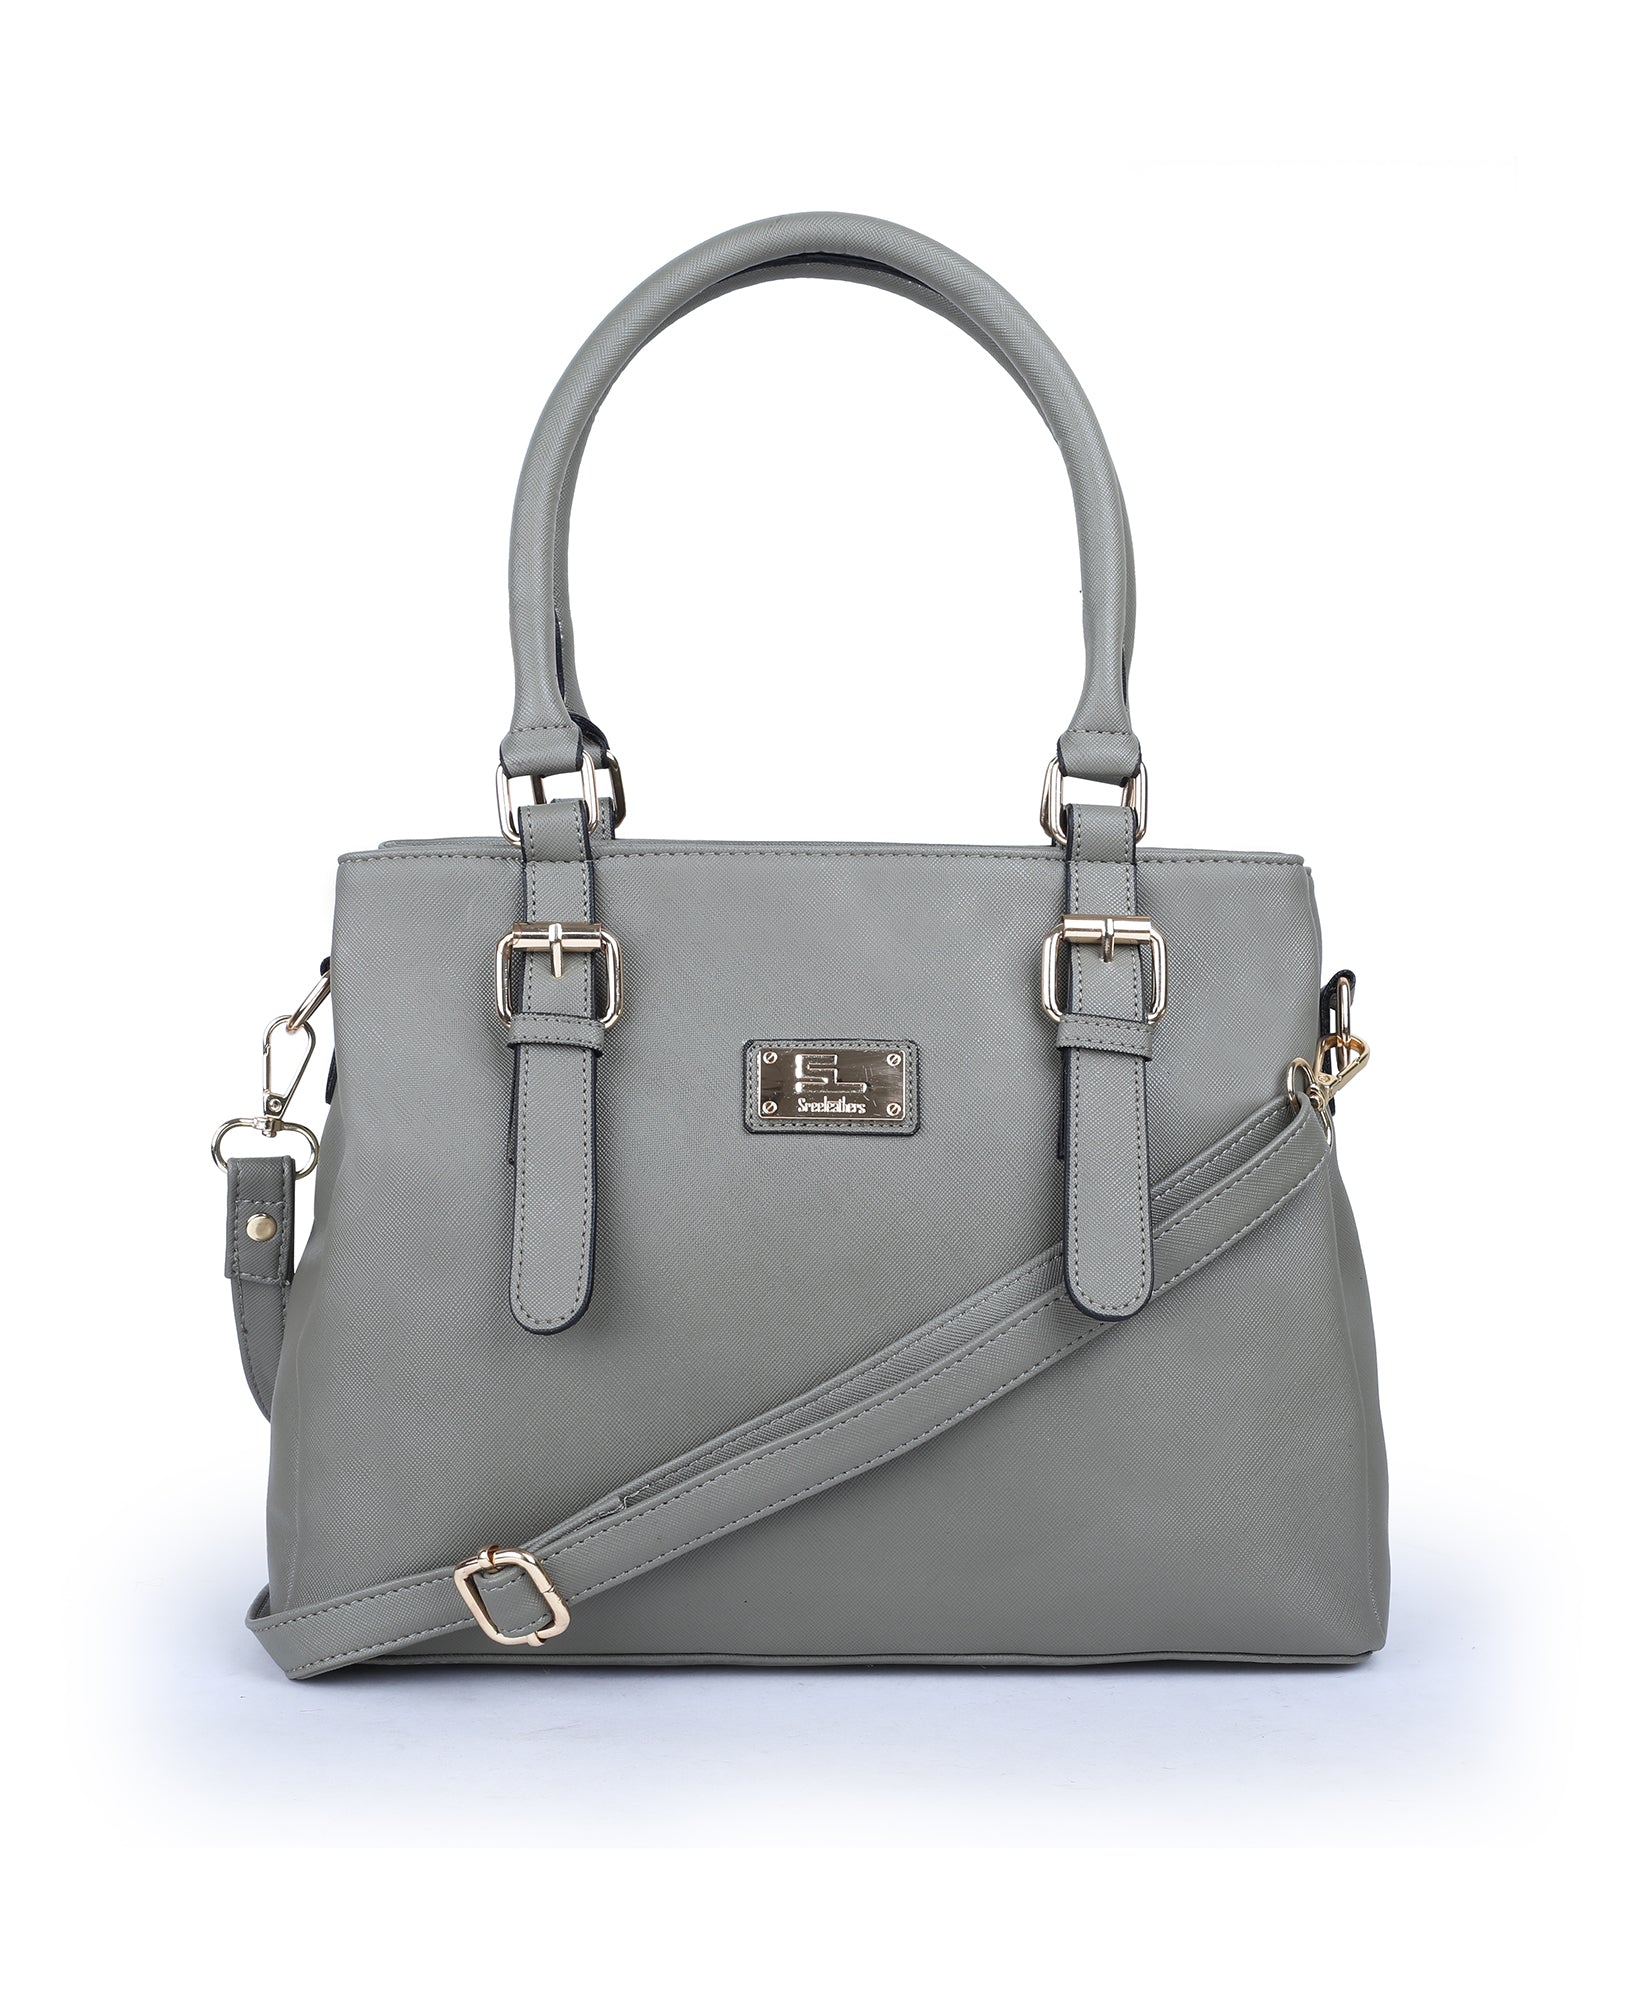 07341 Ladies Bag – Sreeleathers Ltd